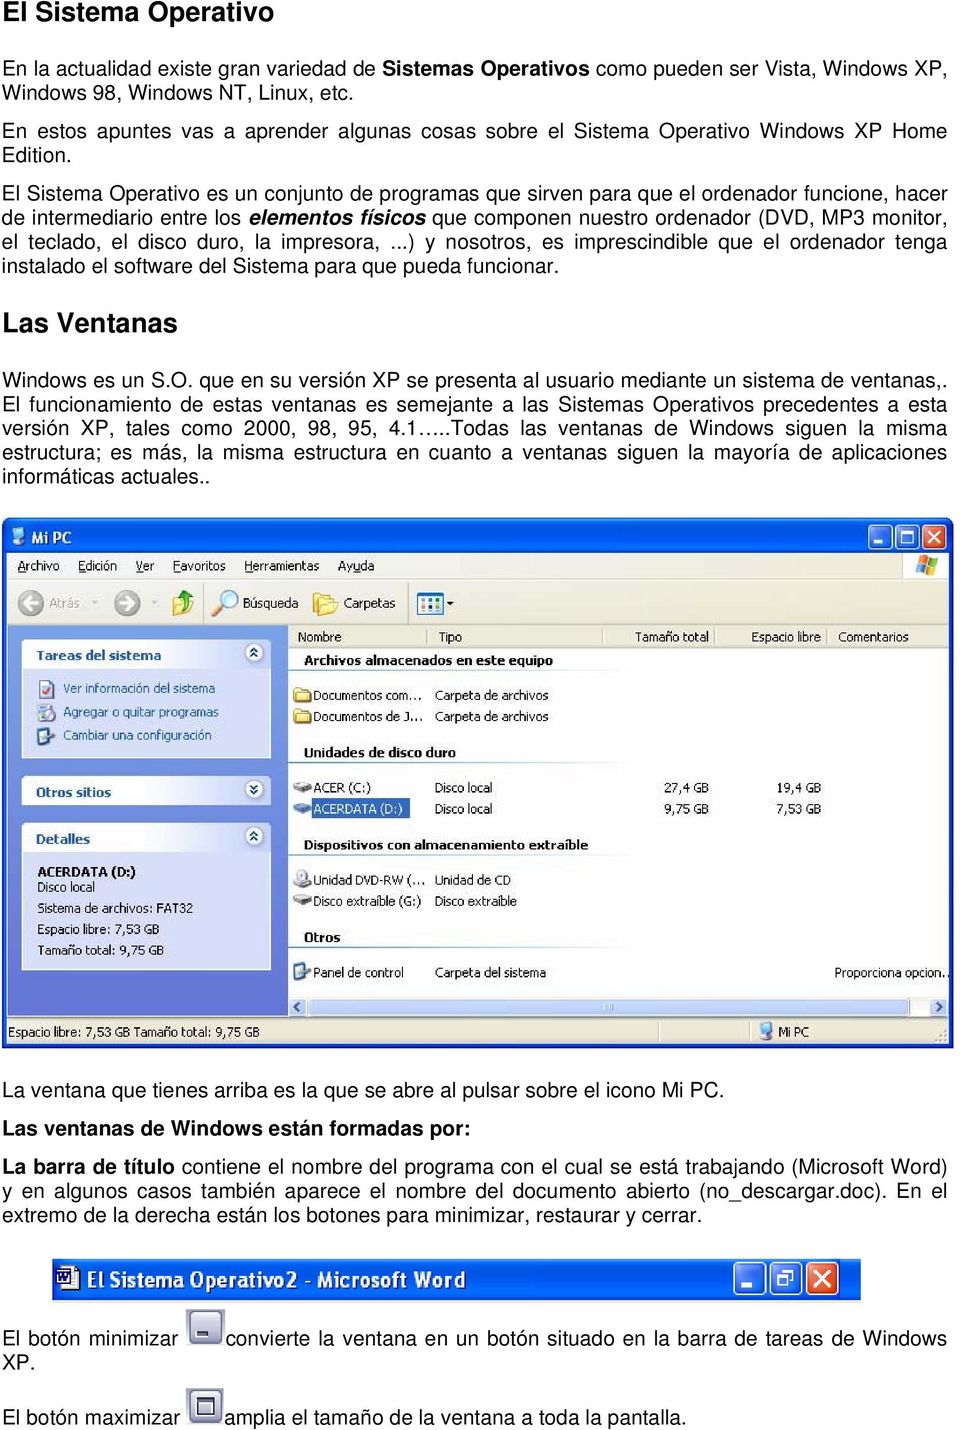 El Sistema Operativo es un conjunto de programas que sirven para que el ordenador funcione, hacer de intermediario entre los elementos físicos que componen nuestro ordenador (DVD, MP3 monitor, el